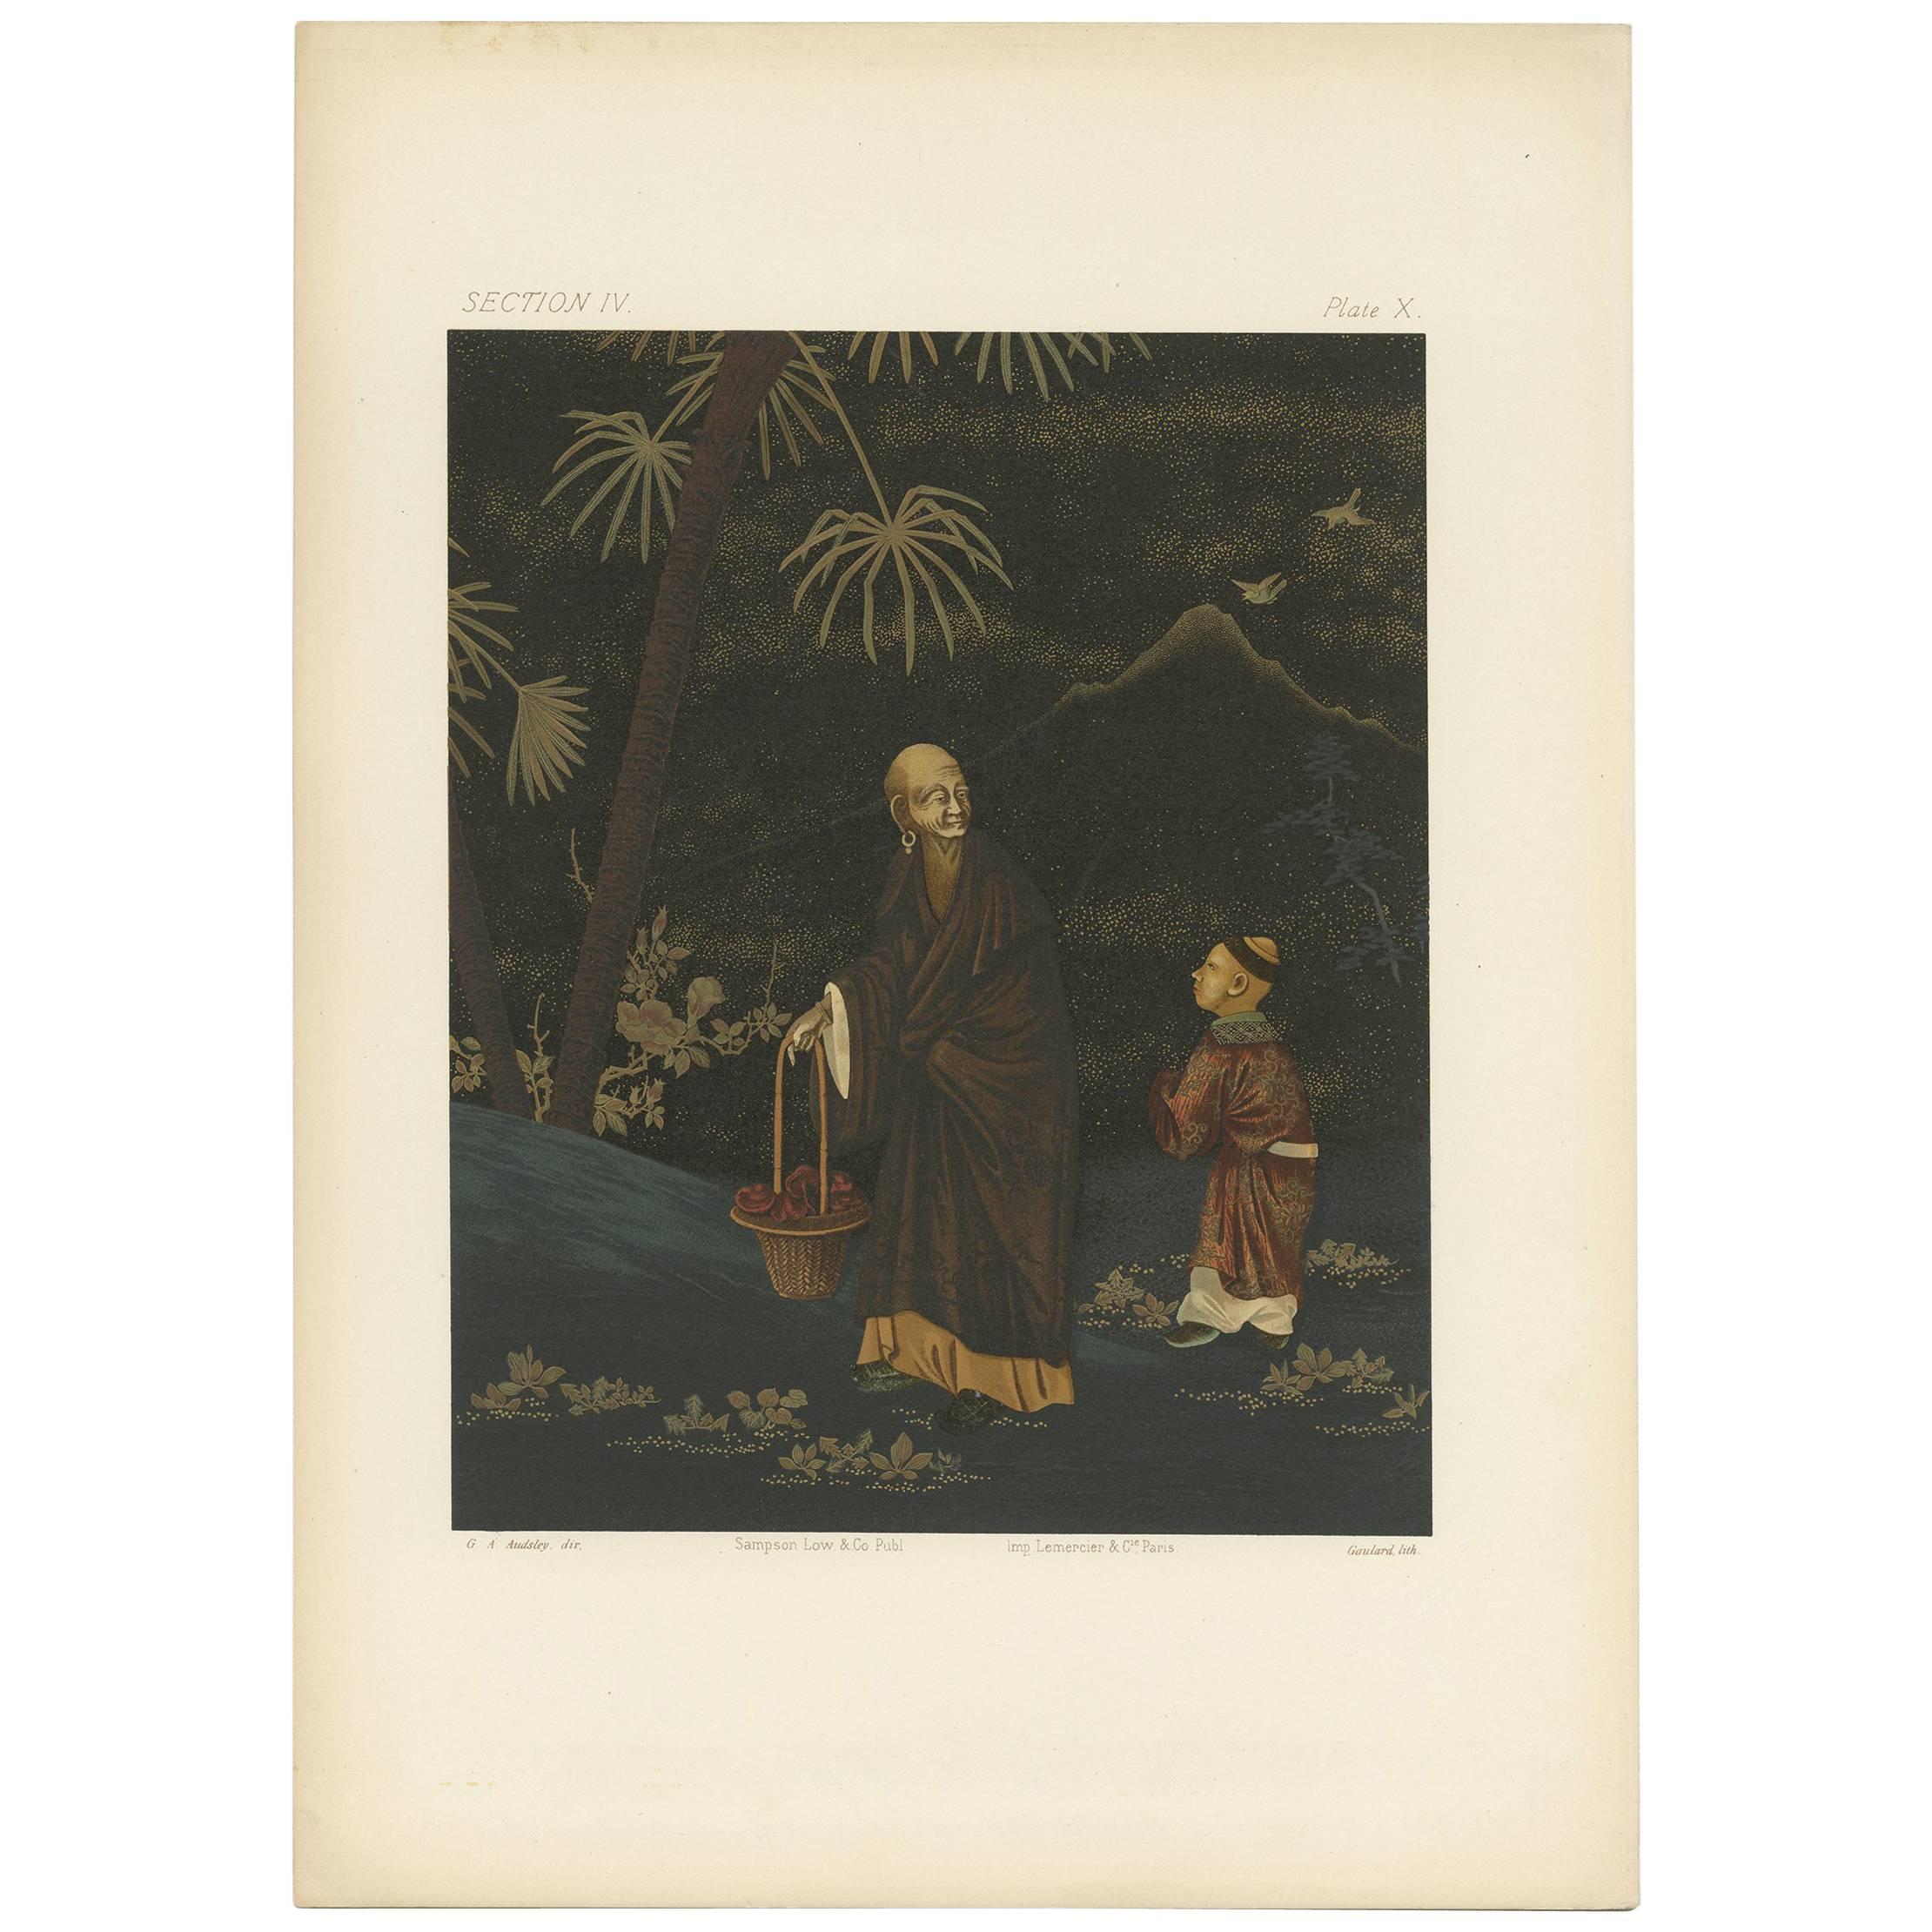 Antiker Druck eines Mannes und eines Jungen 'Japan, Lacquer' von G. Audsley, 1882